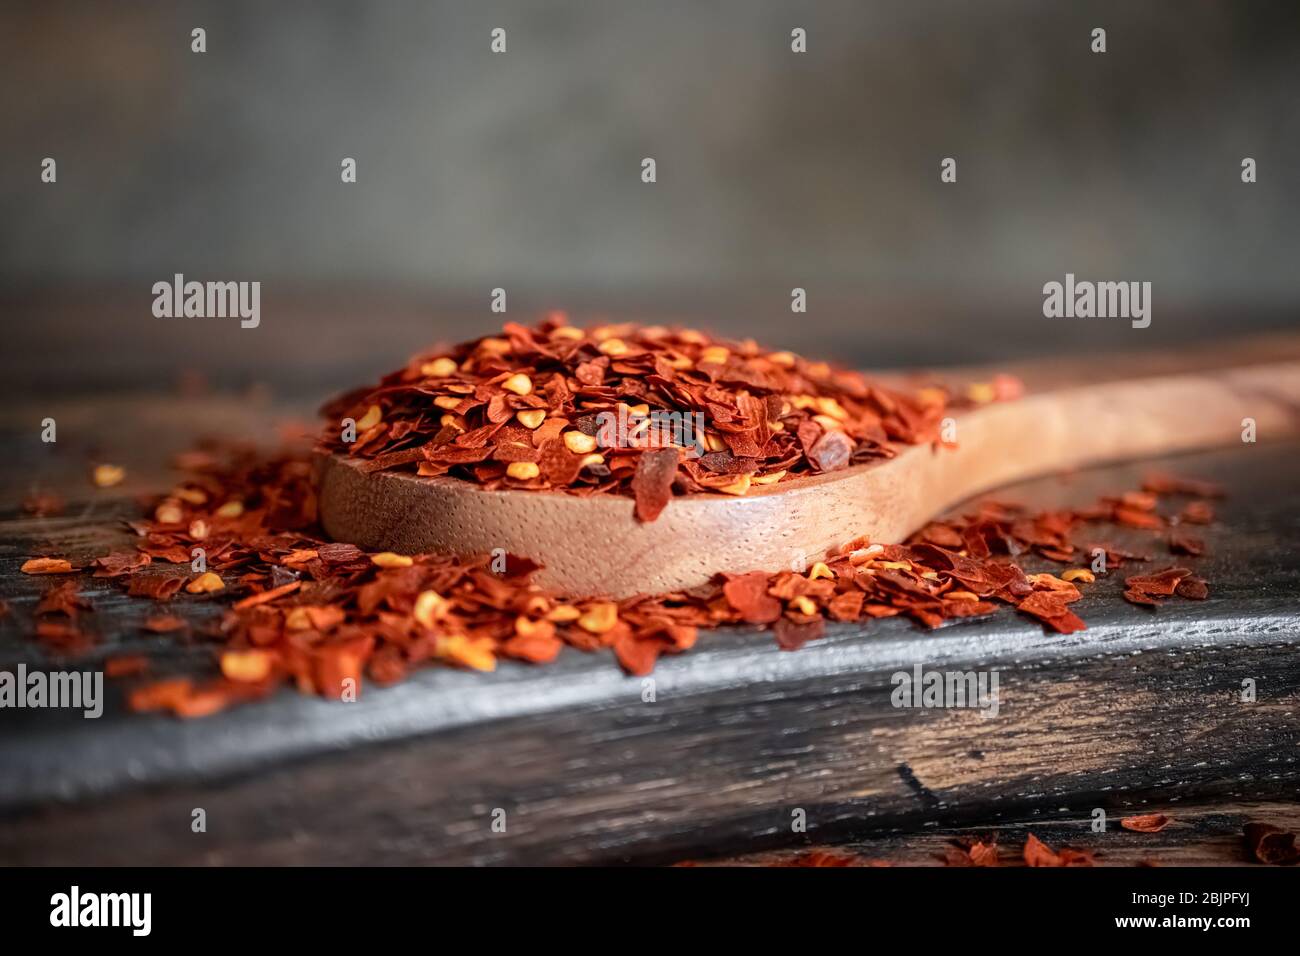 Flocken von roten Chili Chili in Holzlöffel Nahaufnahme auf einem Küchentisch. Stockfoto